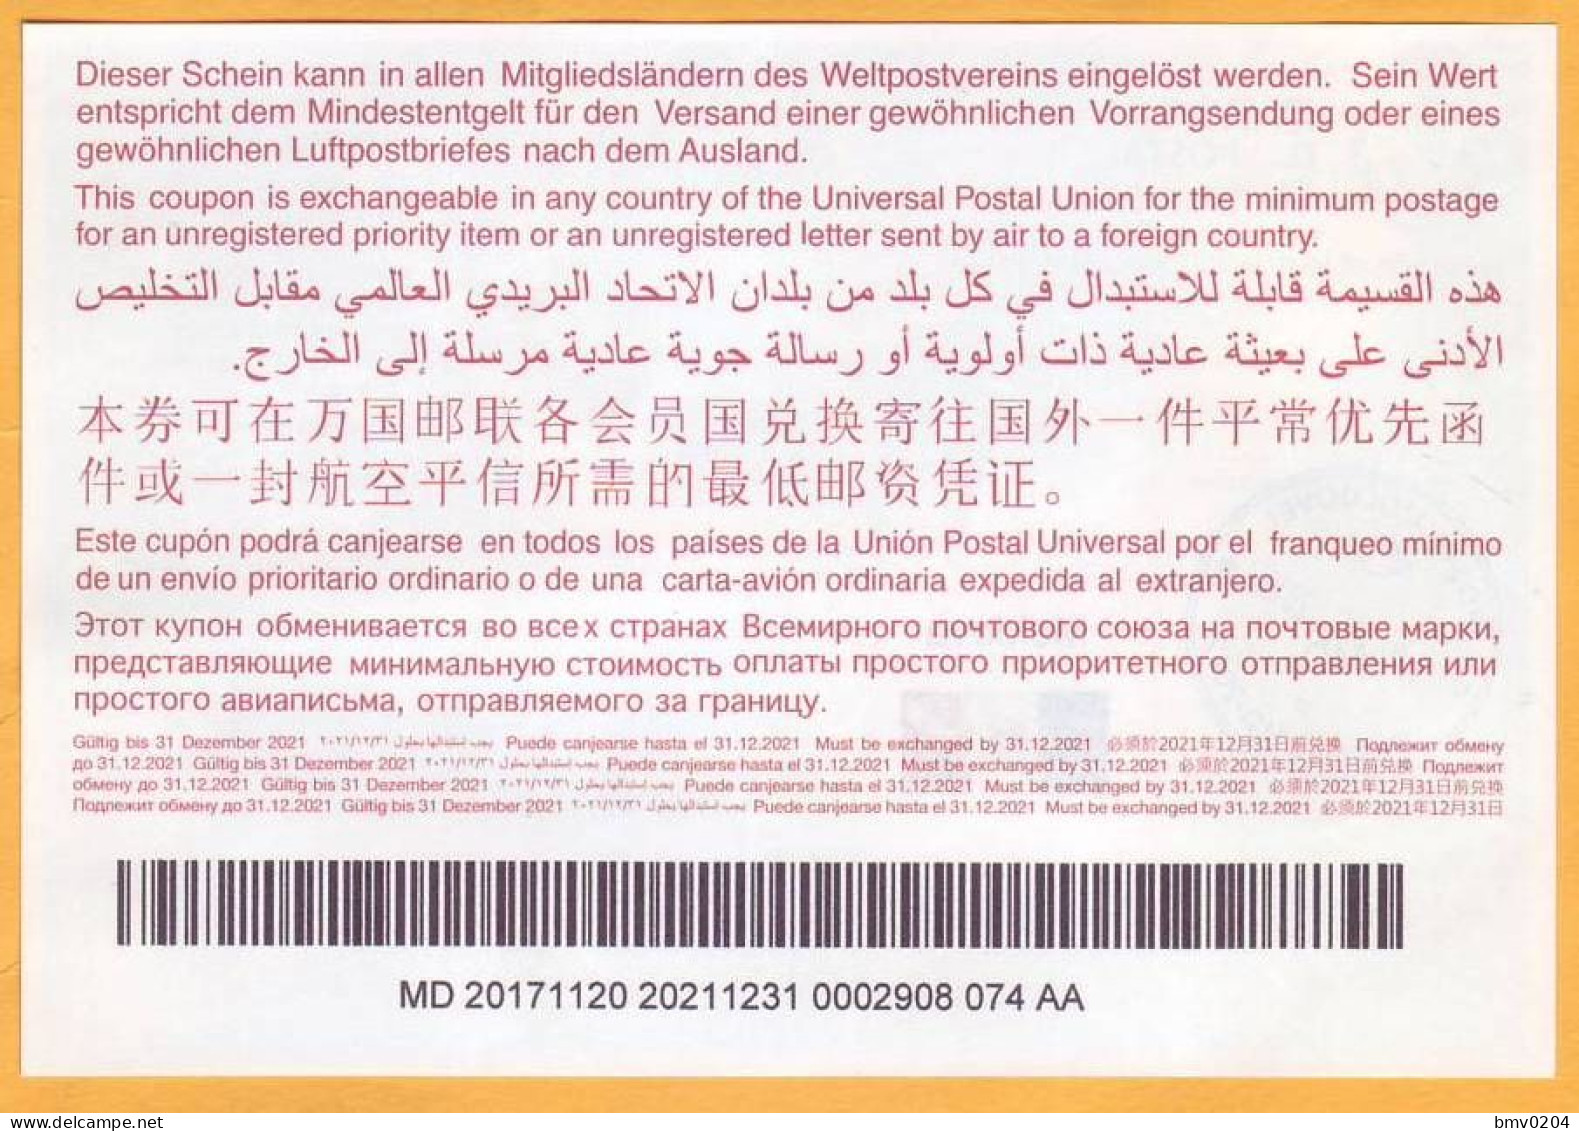 2017  Moldova Moldavie Moldau  Universal Postal Union. International Return Coupon. 0002908 074 AA - UPU (Unión Postal Universal)